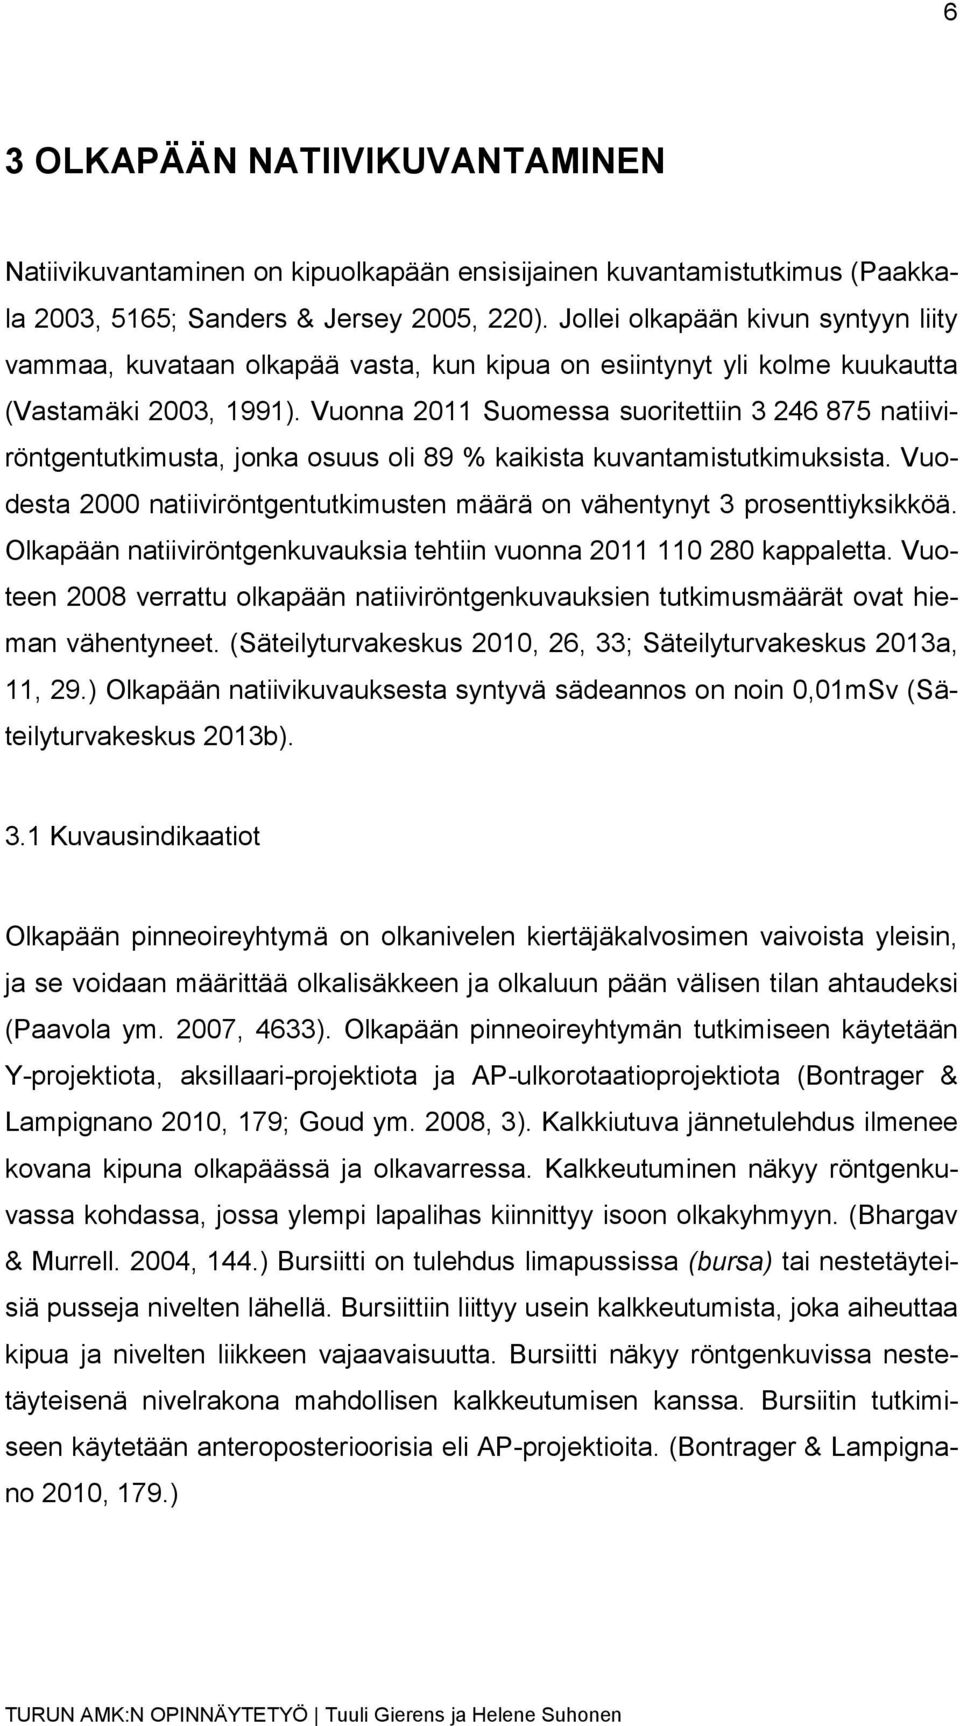 Vuonna 2011 Suomessa suoritettiin 3 246 875 natiiviröntgentutkimusta, jonka osuus oli 89 % kaikista kuvantamistutkimuksista.